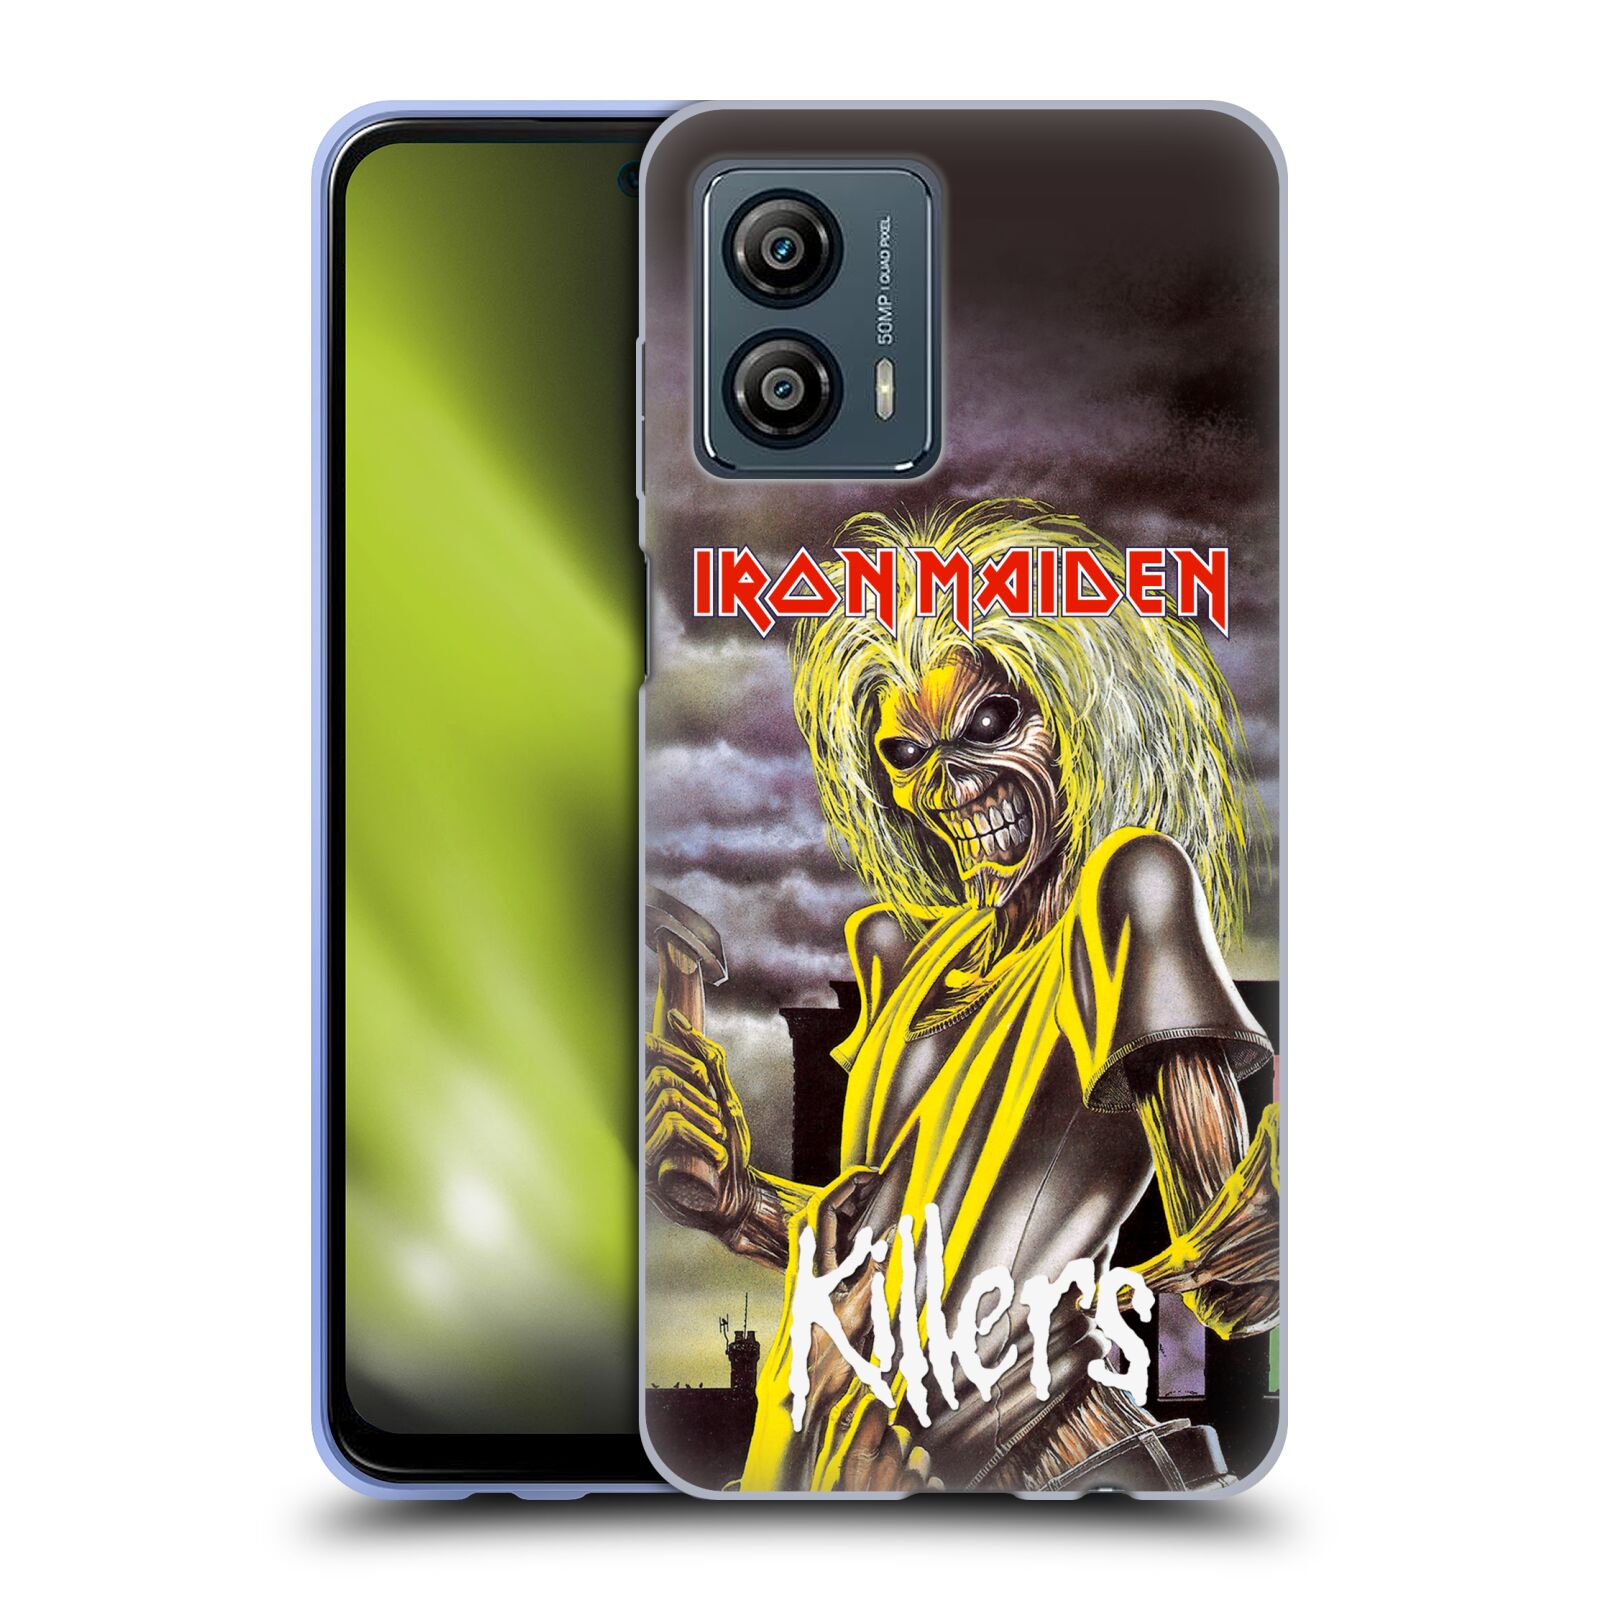 Silikonové pouzdro na mobil Motorola Moto G53 5G - Head Case - Iron Maiden - Killers (Silikonový kryt, obal, pouzdro na mobilní telefon Motorola Moto G53 5G s motivem Iron Maiden - Killers)